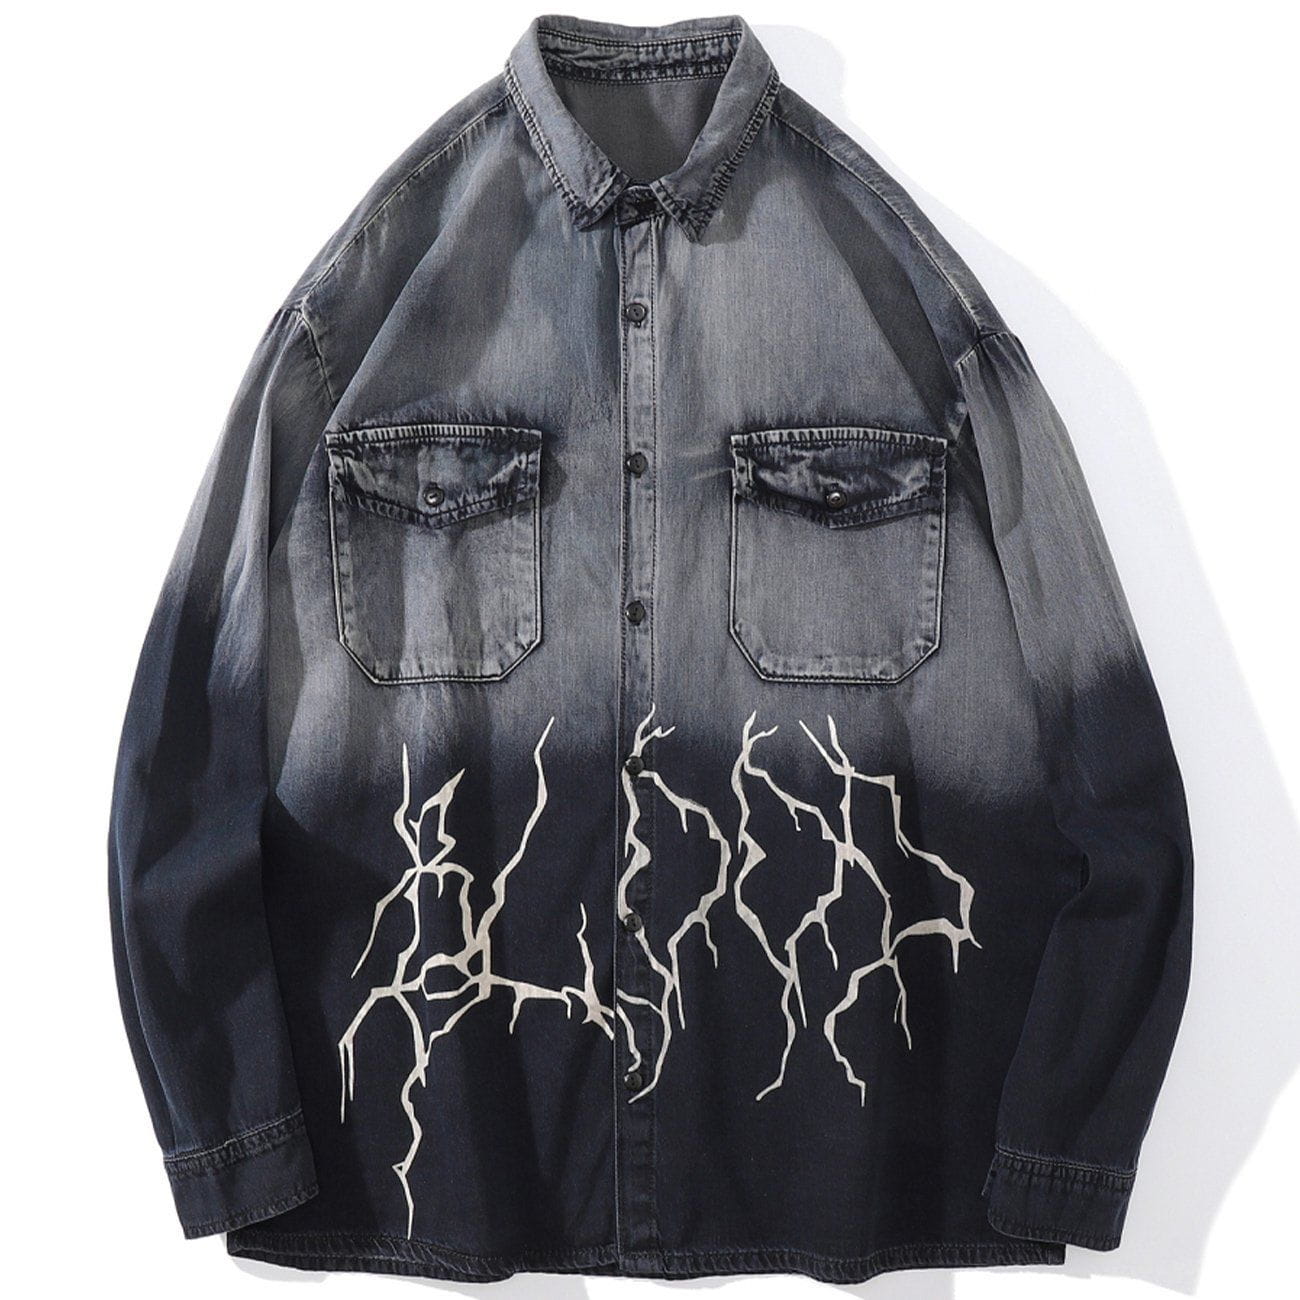 Eprezzy® - Lightning Gradient Jacket Streetwear Fashion - eprezzy.com